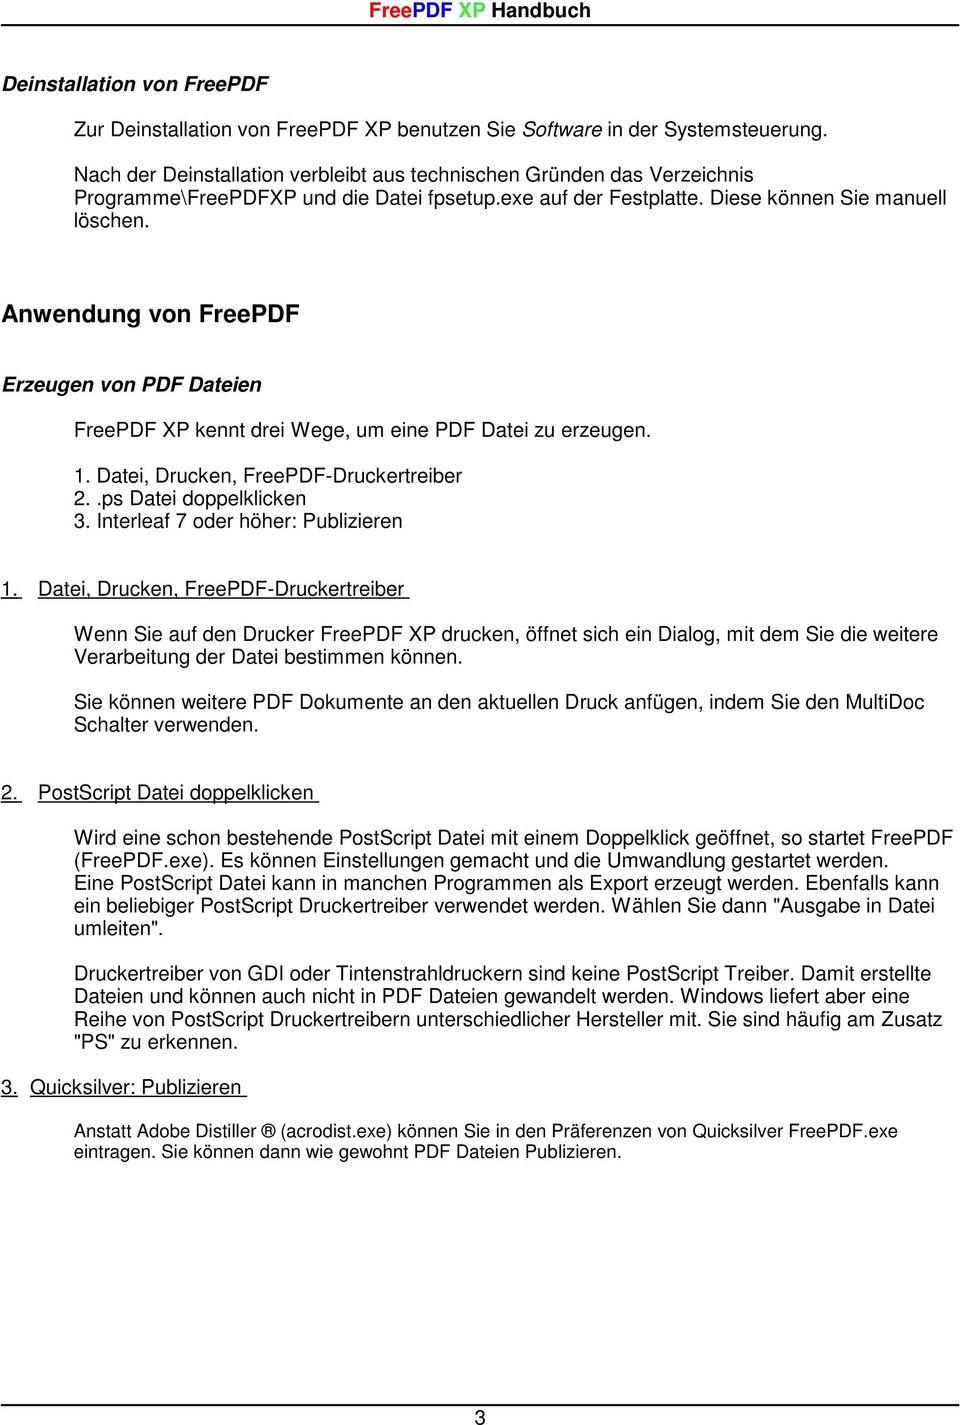 Anwendung von FreePDF Erzeugen von PDF Dateien FreePDF XP kennt drei Wege, um eine PDF Datei zu erzeugen. 1. Datei, Drucken, FreePDF-Druckertreiber 2..ps Datei doppelklicken 3.